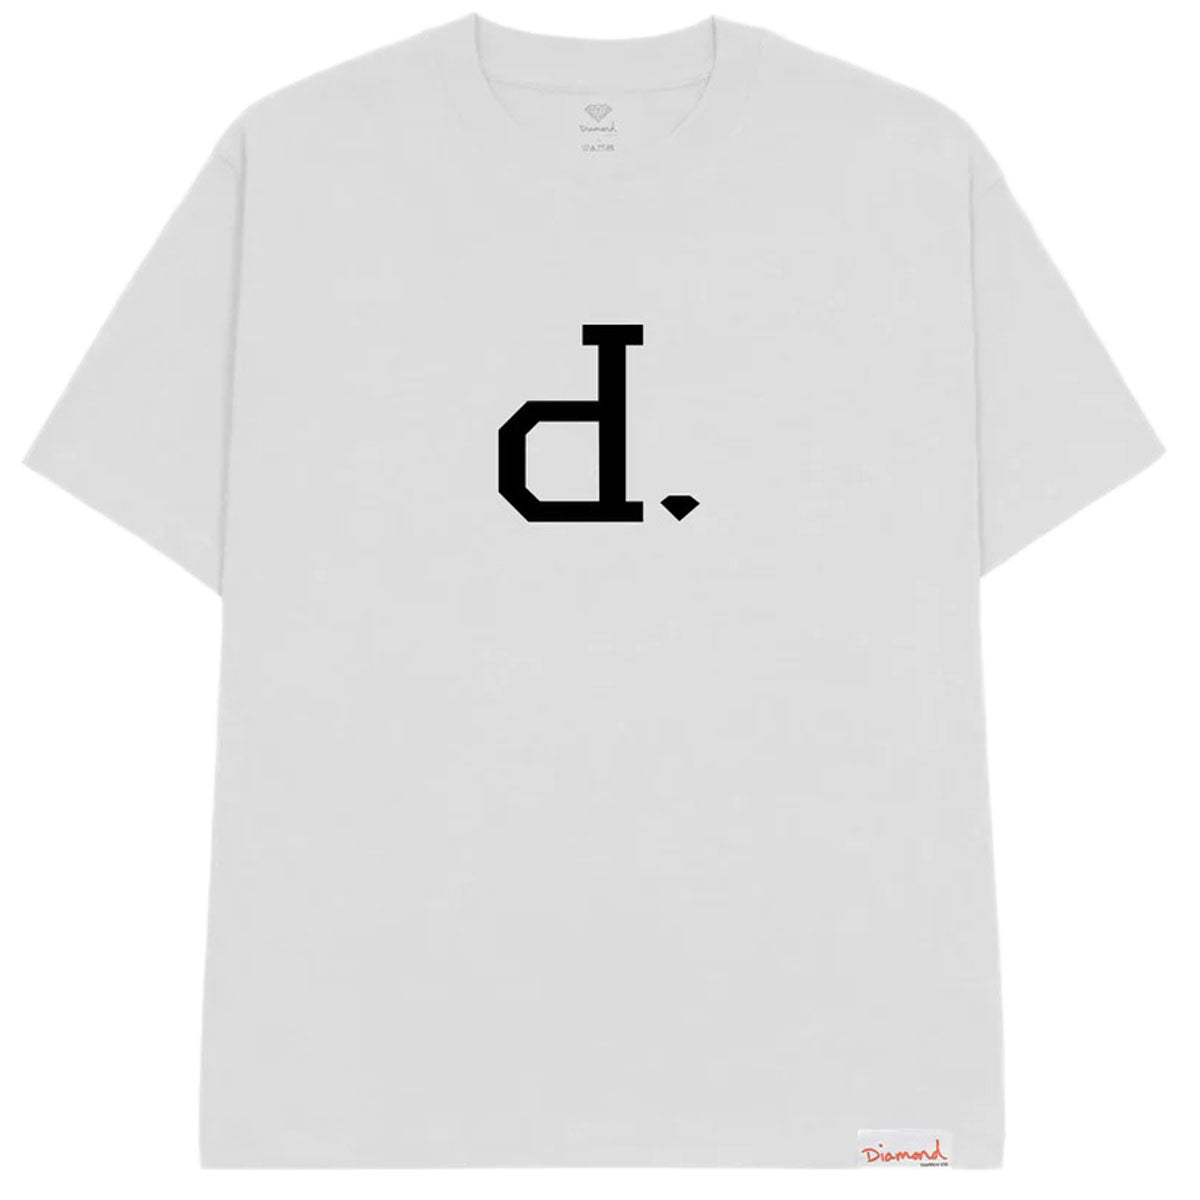 Diamond Supply Co. Unpolo Script T-Shirt - White image 1